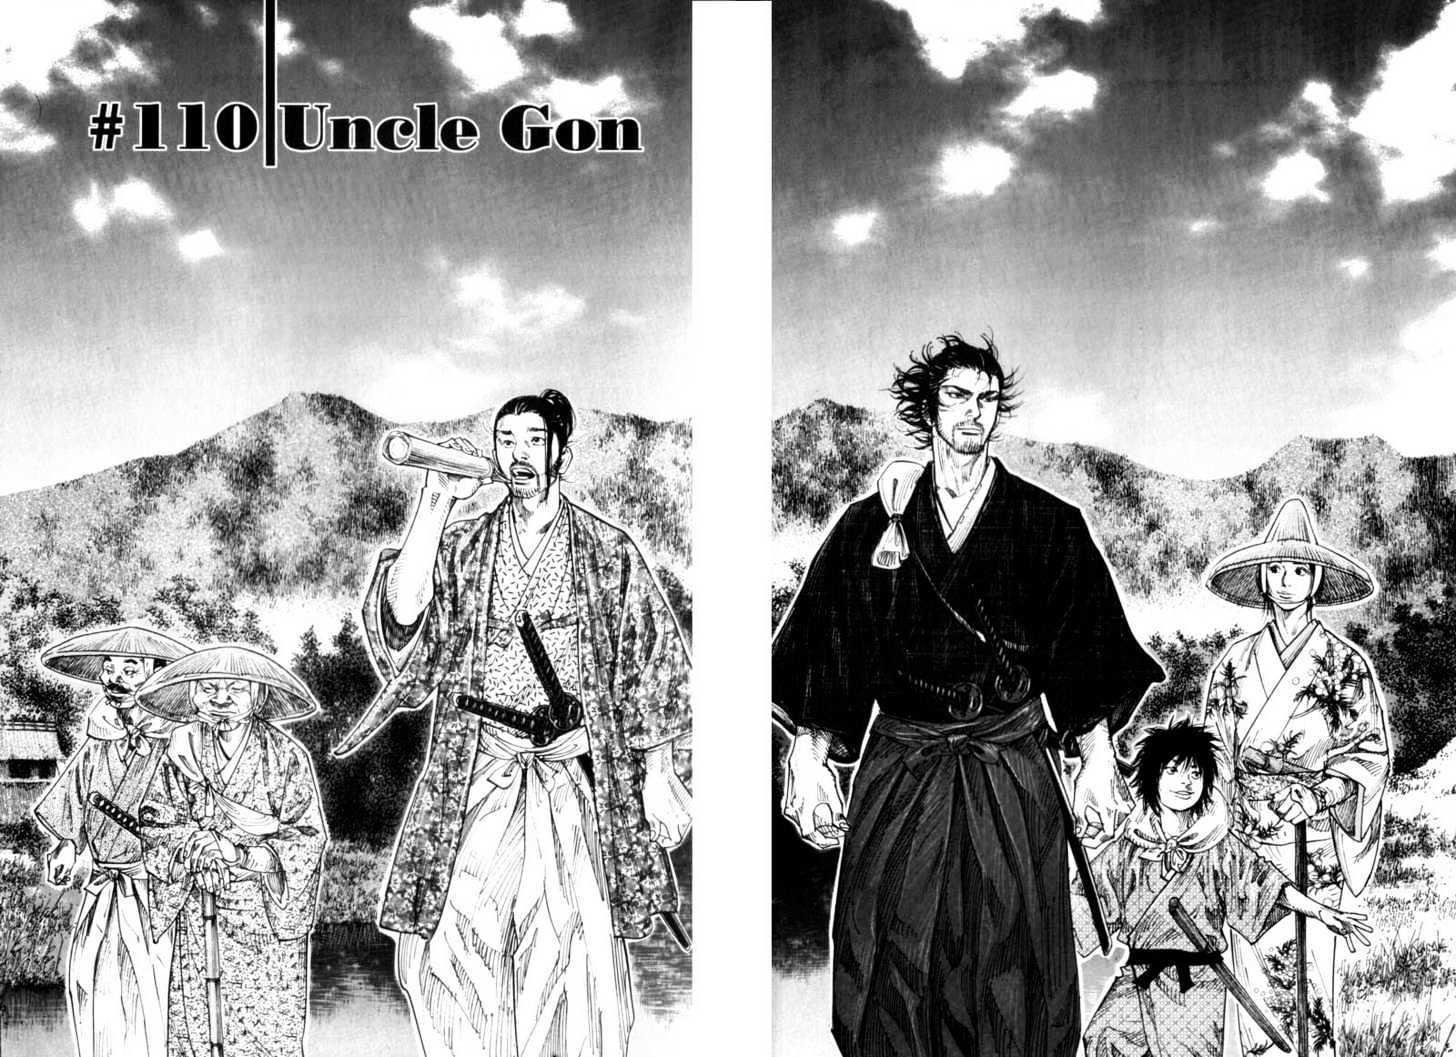 Vagabond Vol.12 Chapter 110 : Uncle Gon page 2 - Mangakakalot